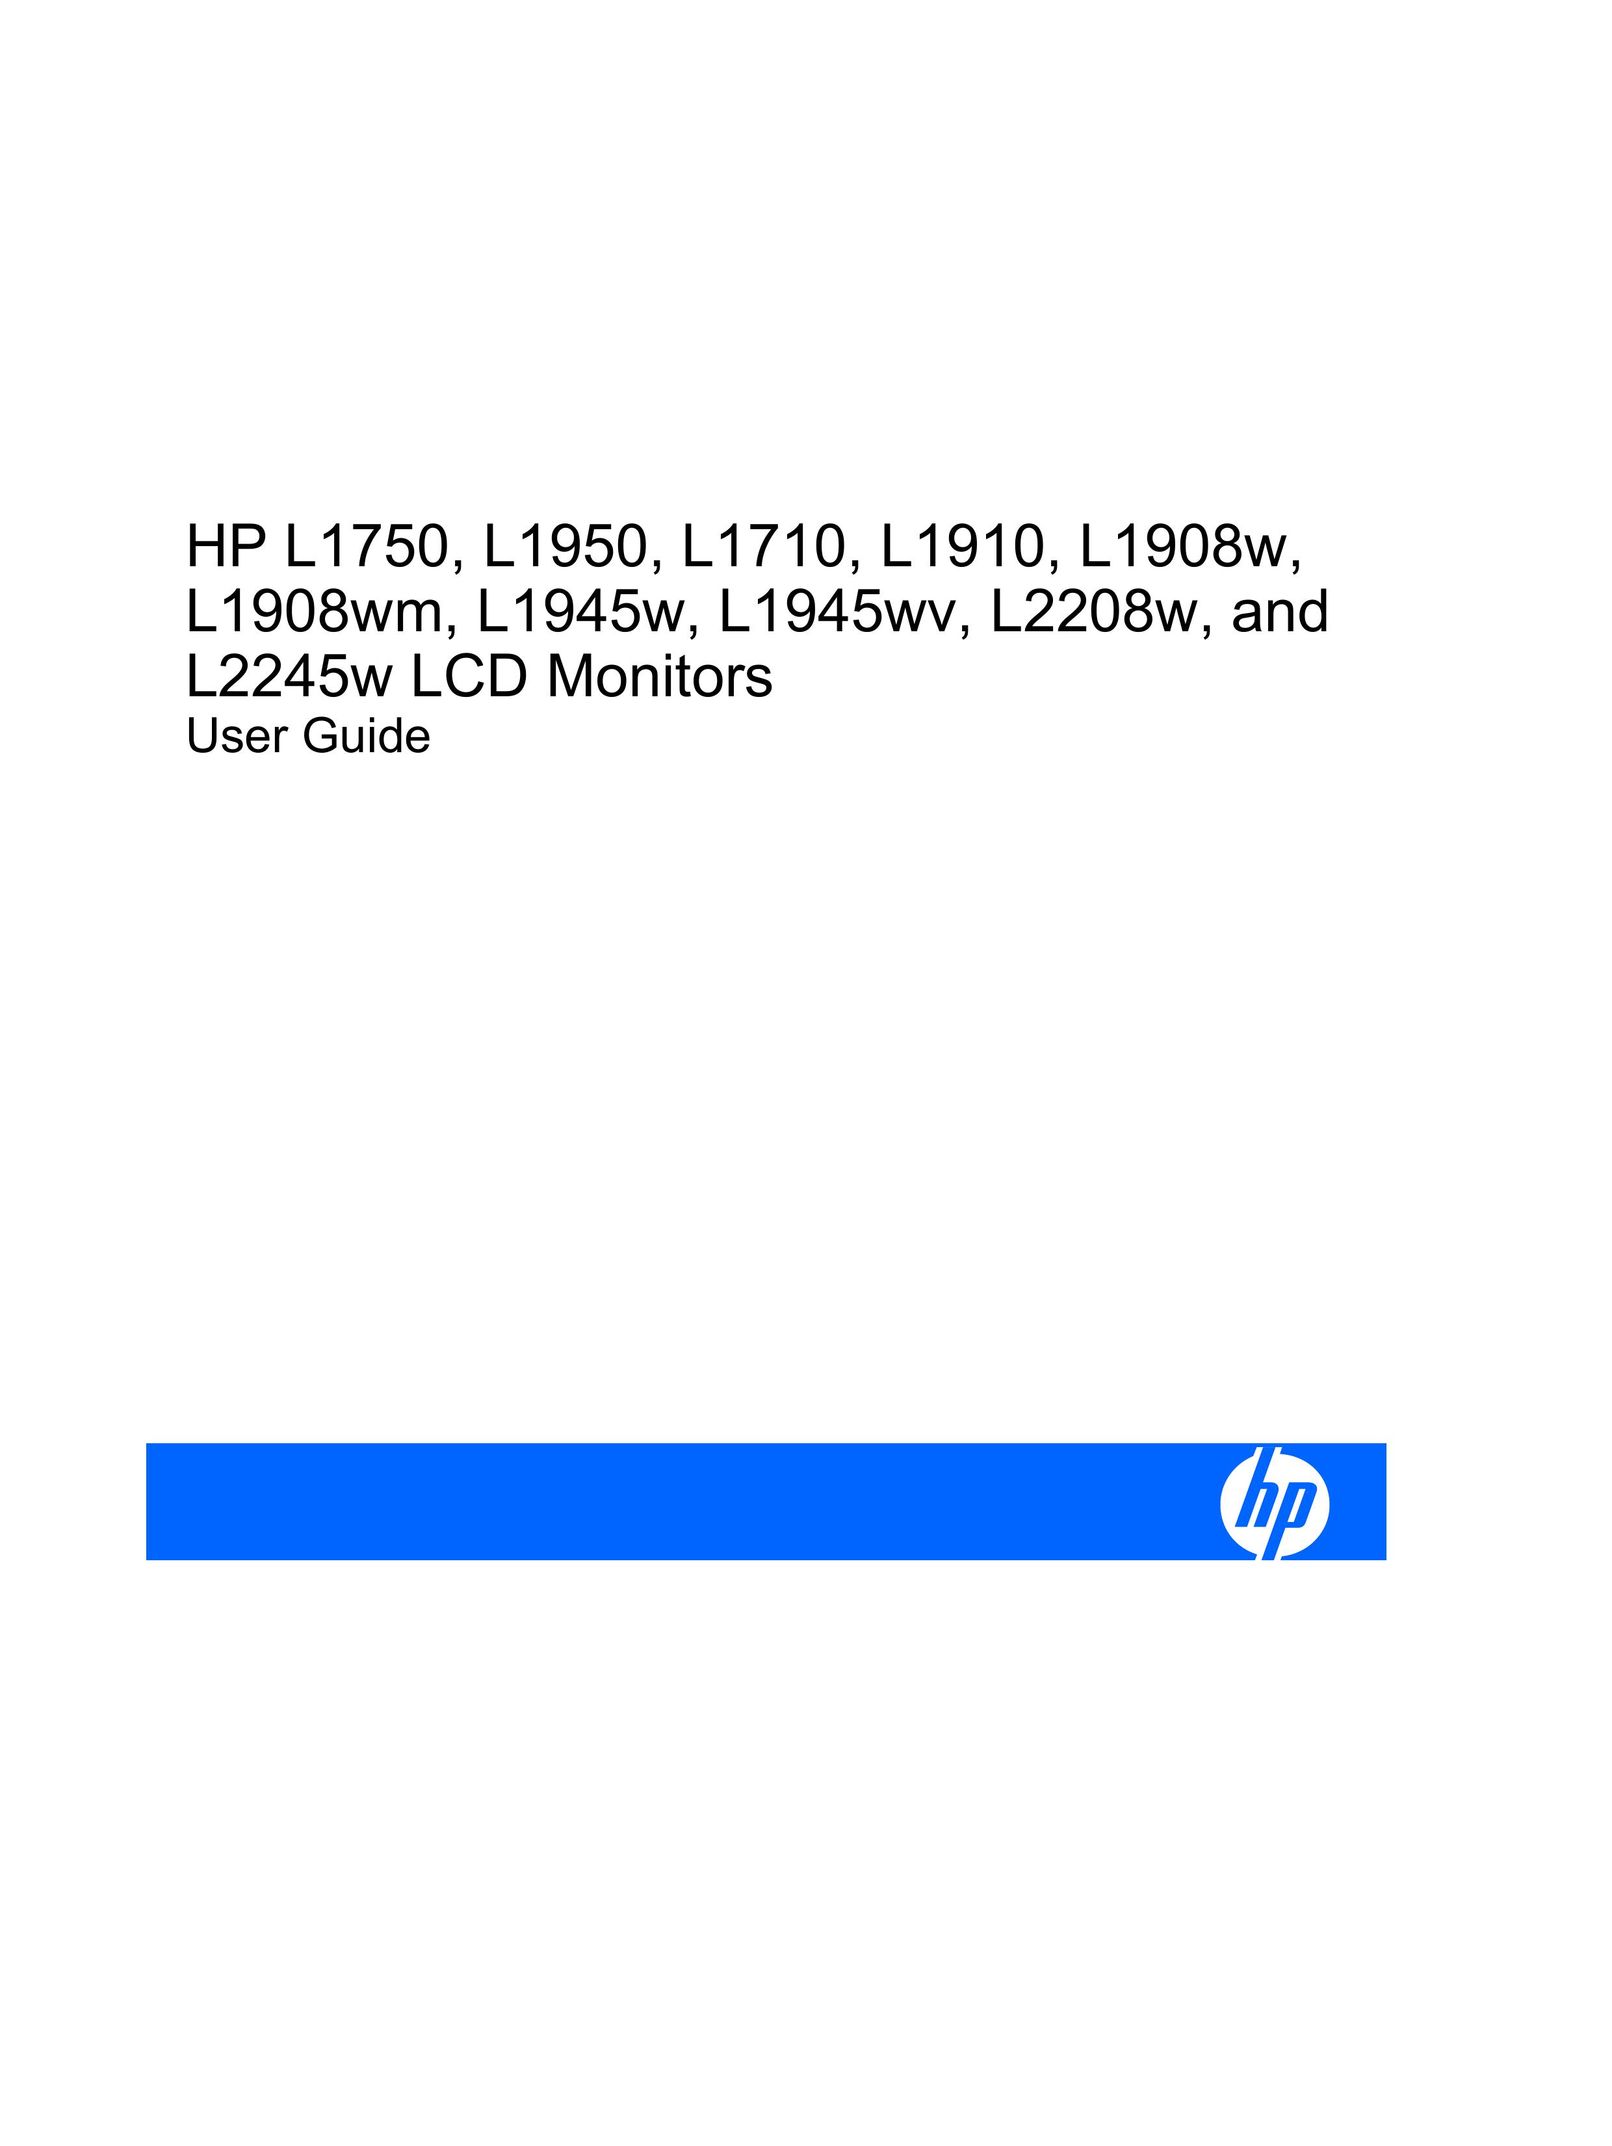 HP (Hewlett-Packard) L2208W Flat Panel Television User Manual